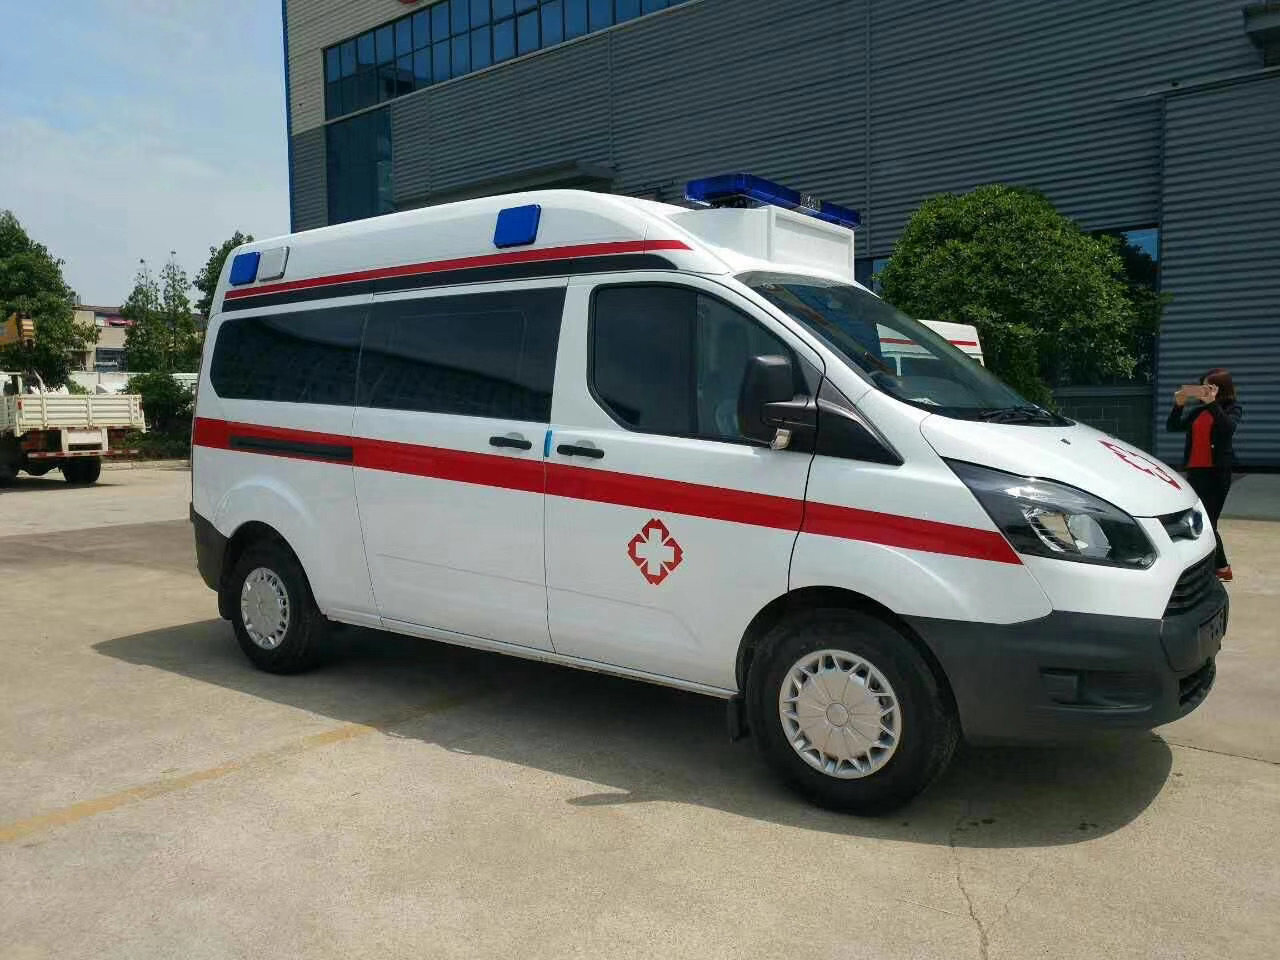 灌云县出院转院救护车